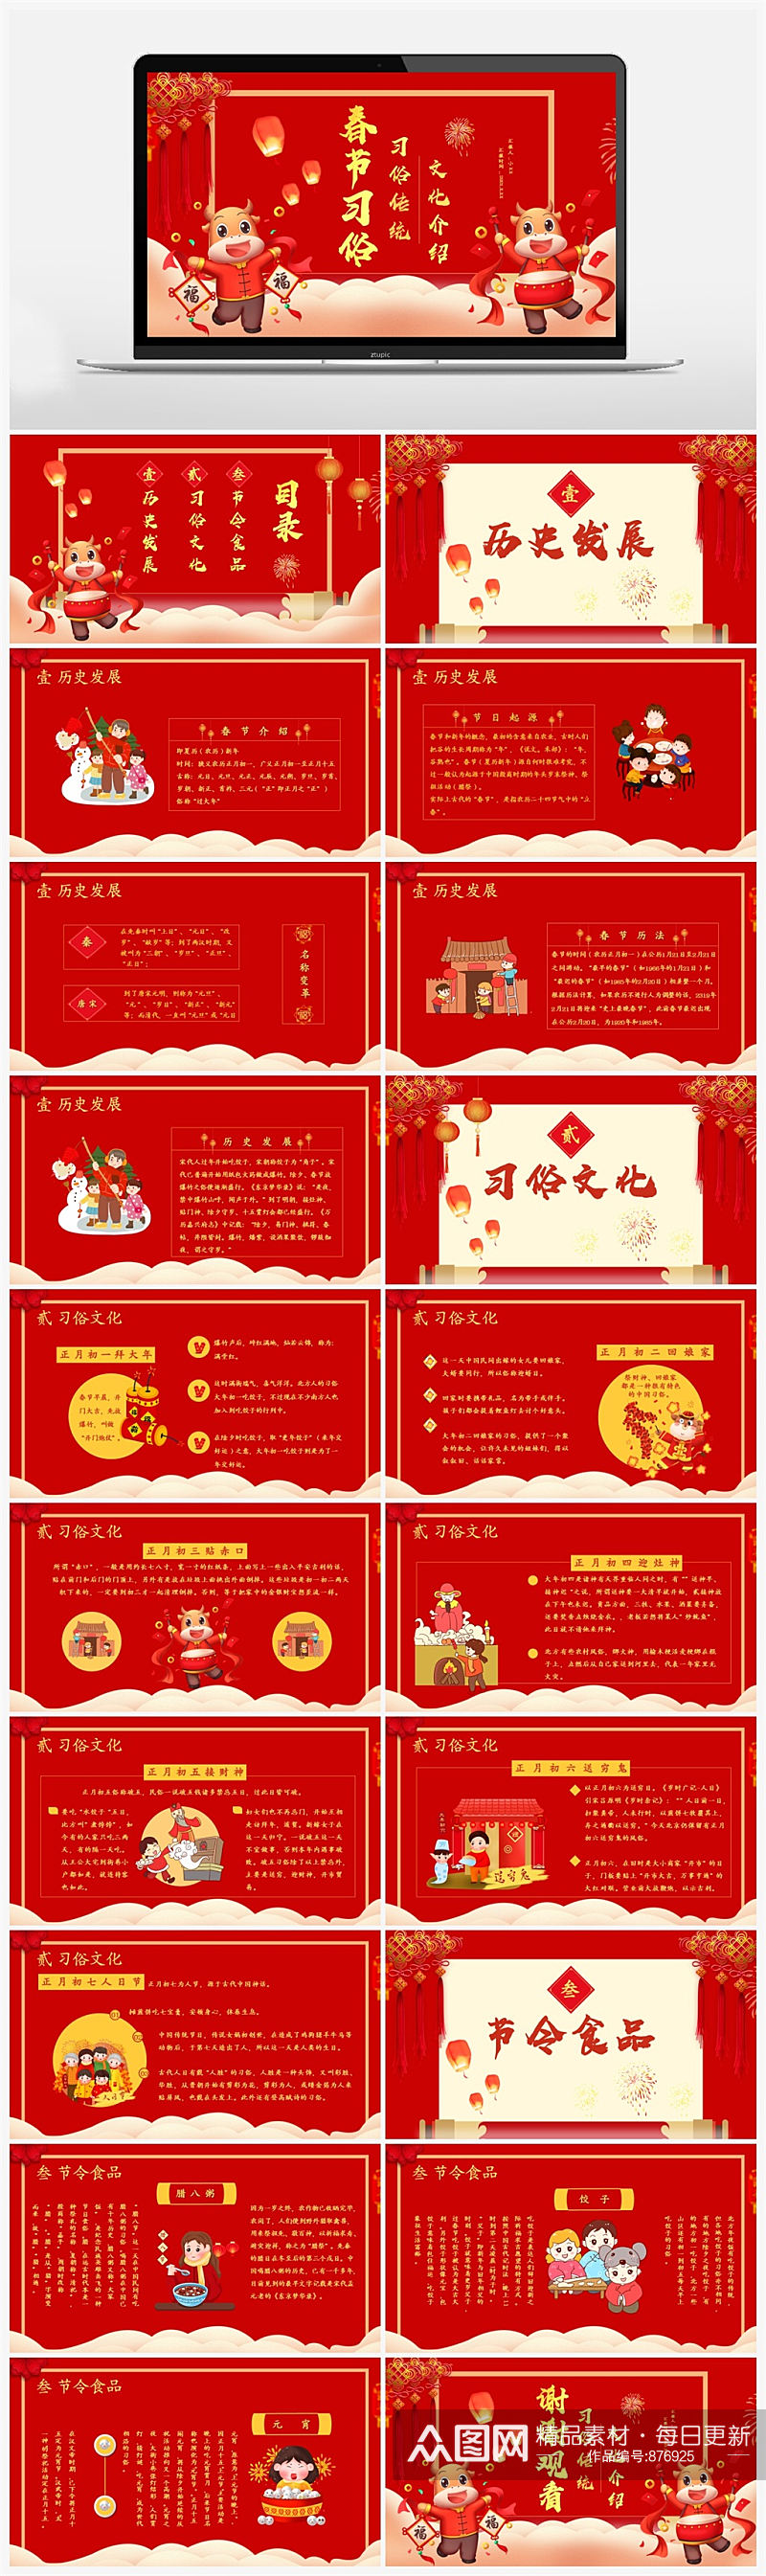 红色中国风牛年春节习俗文化介绍PPT模板素材